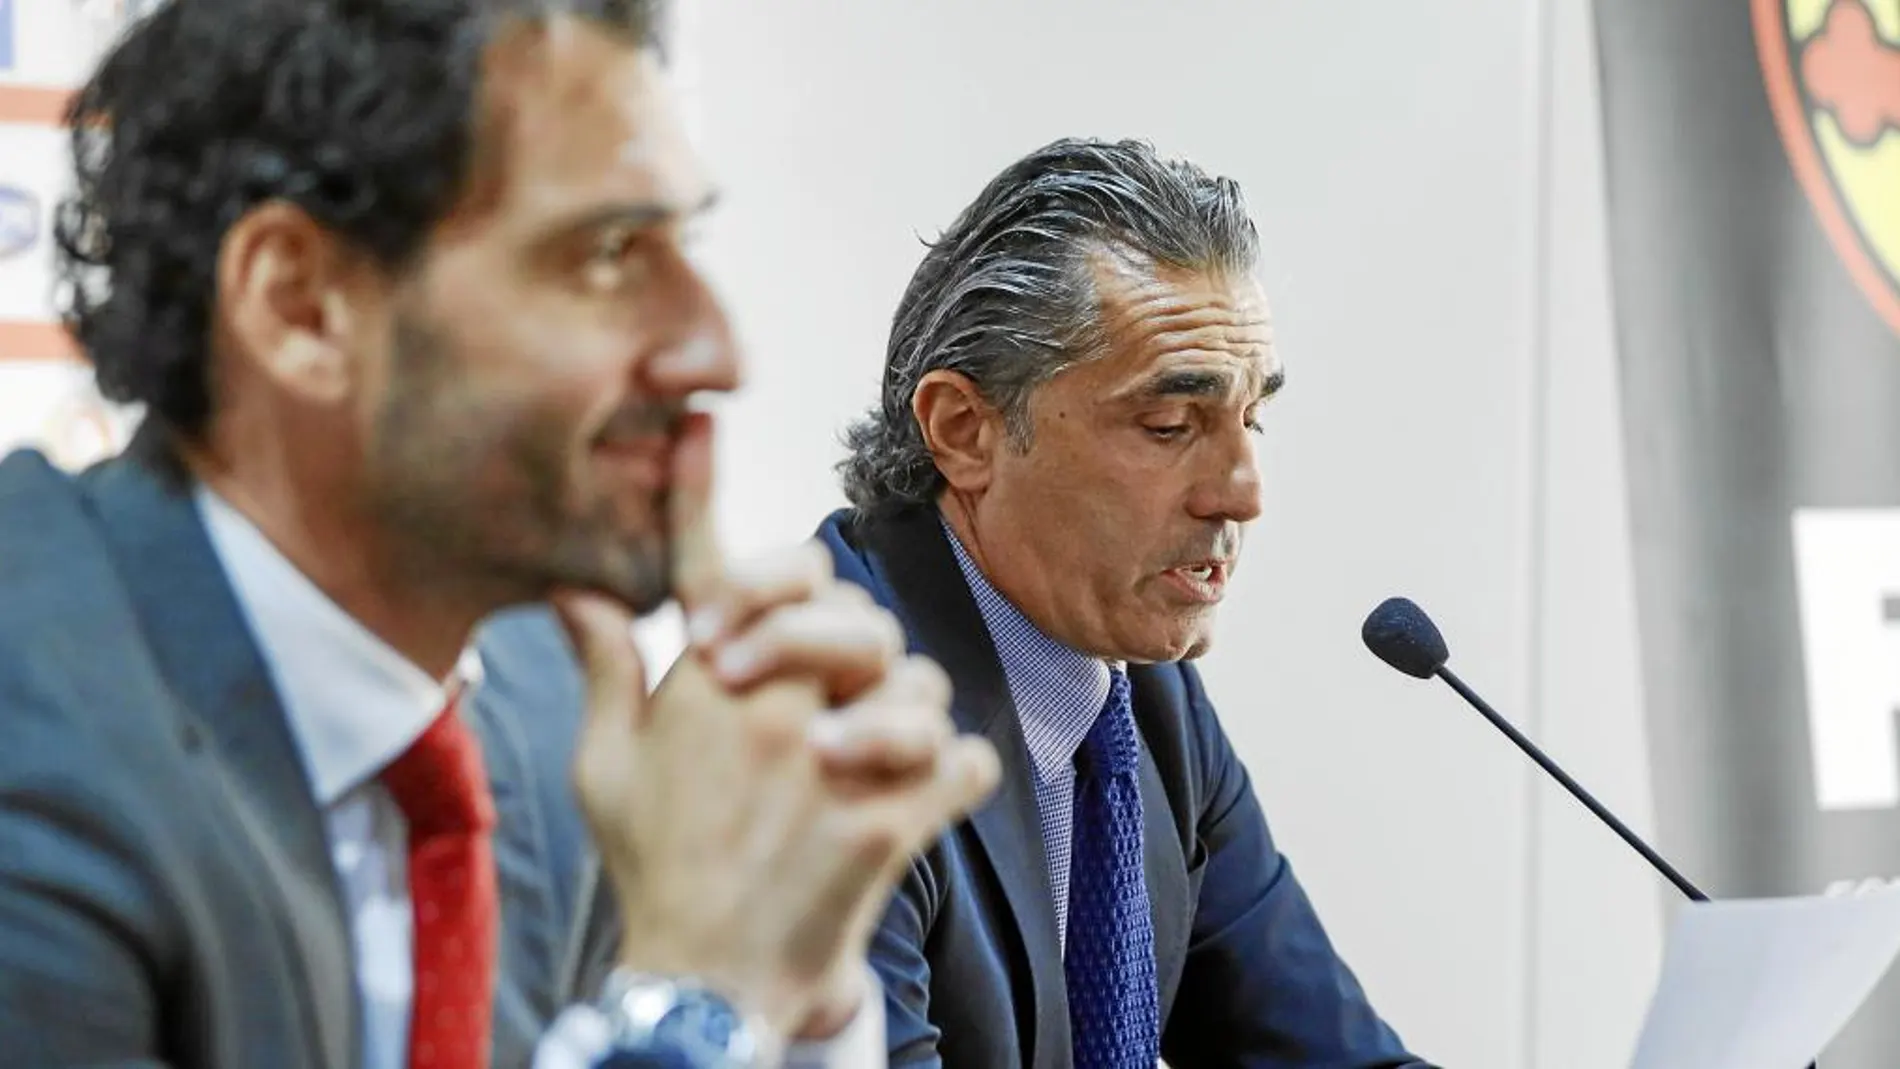 Jorge Garbajosa y Sergio Scariolo, en una de sus conferencias de prensa conjuntas como presidente de la Federación de Baloncesto y seleccionador / Efe